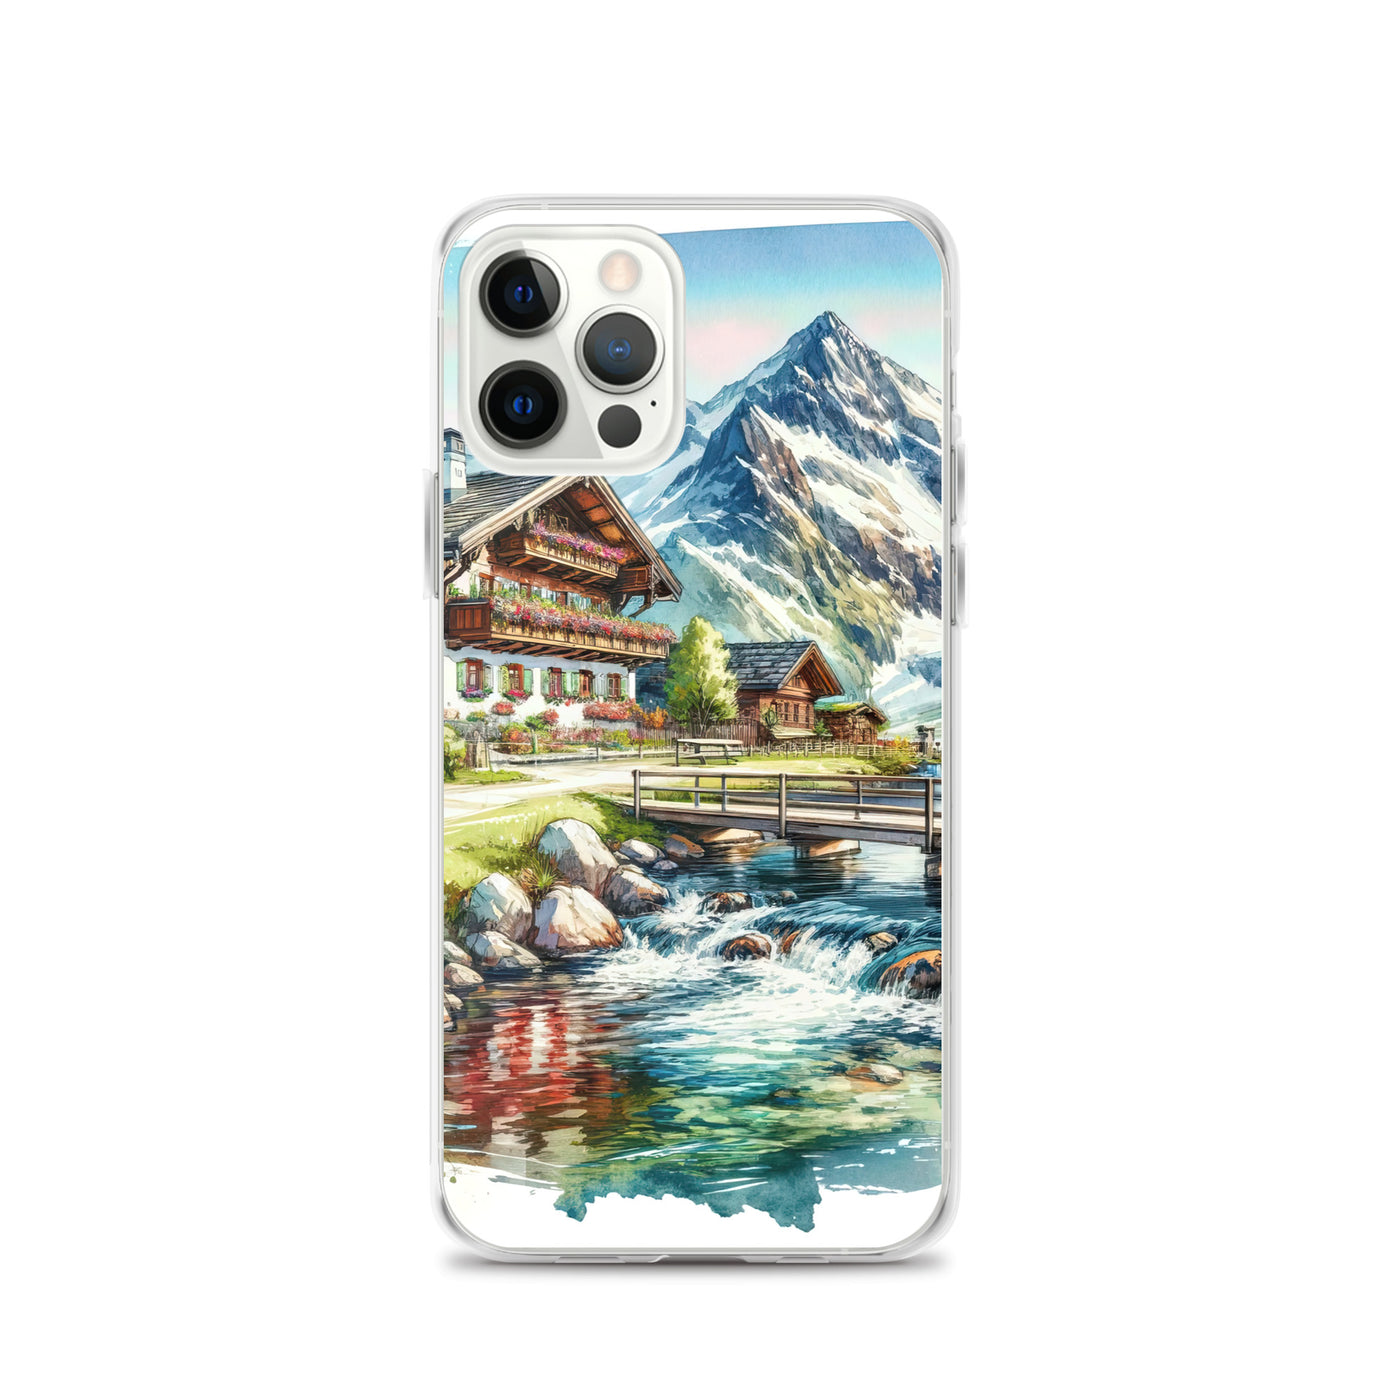 Aquarell der frühlingshaften Alpenkette mit österreichischer Flagge und schmelzendem Schnee - iPhone Schutzhülle (durchsichtig) berge xxx yyy zzz iPhone 12 Pro